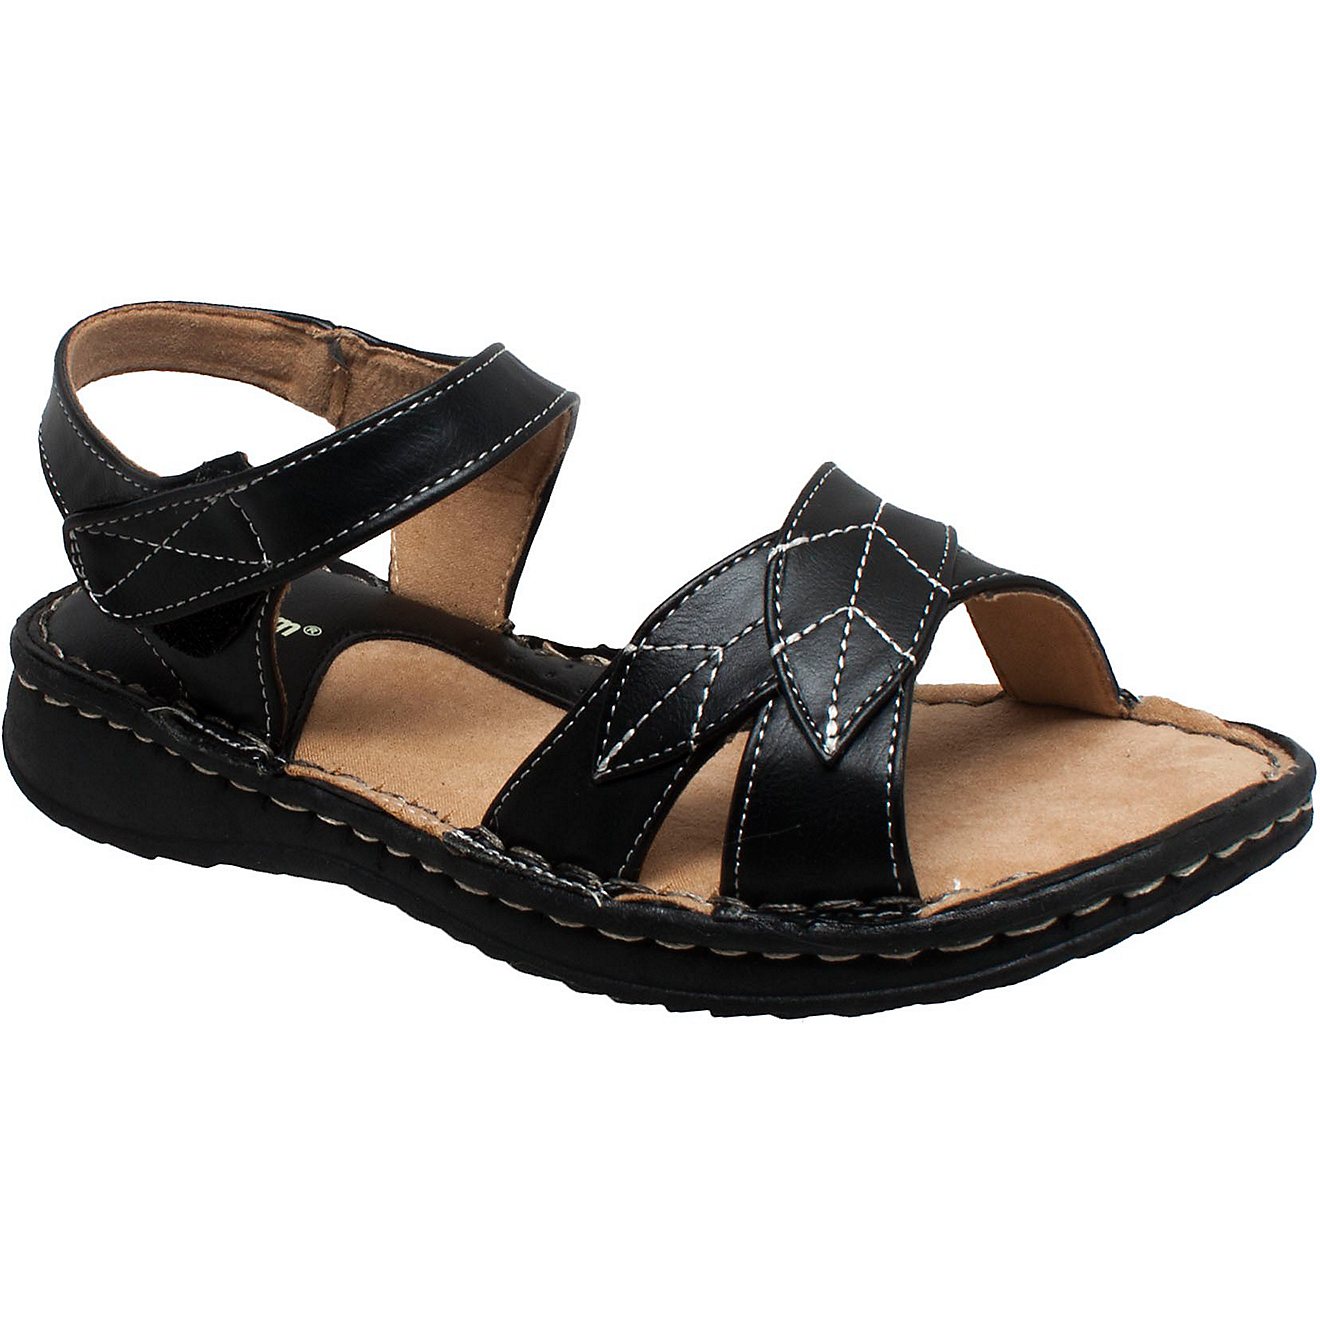 Shaboom Women's Comfort Sandals                                                                                                  - view number 2